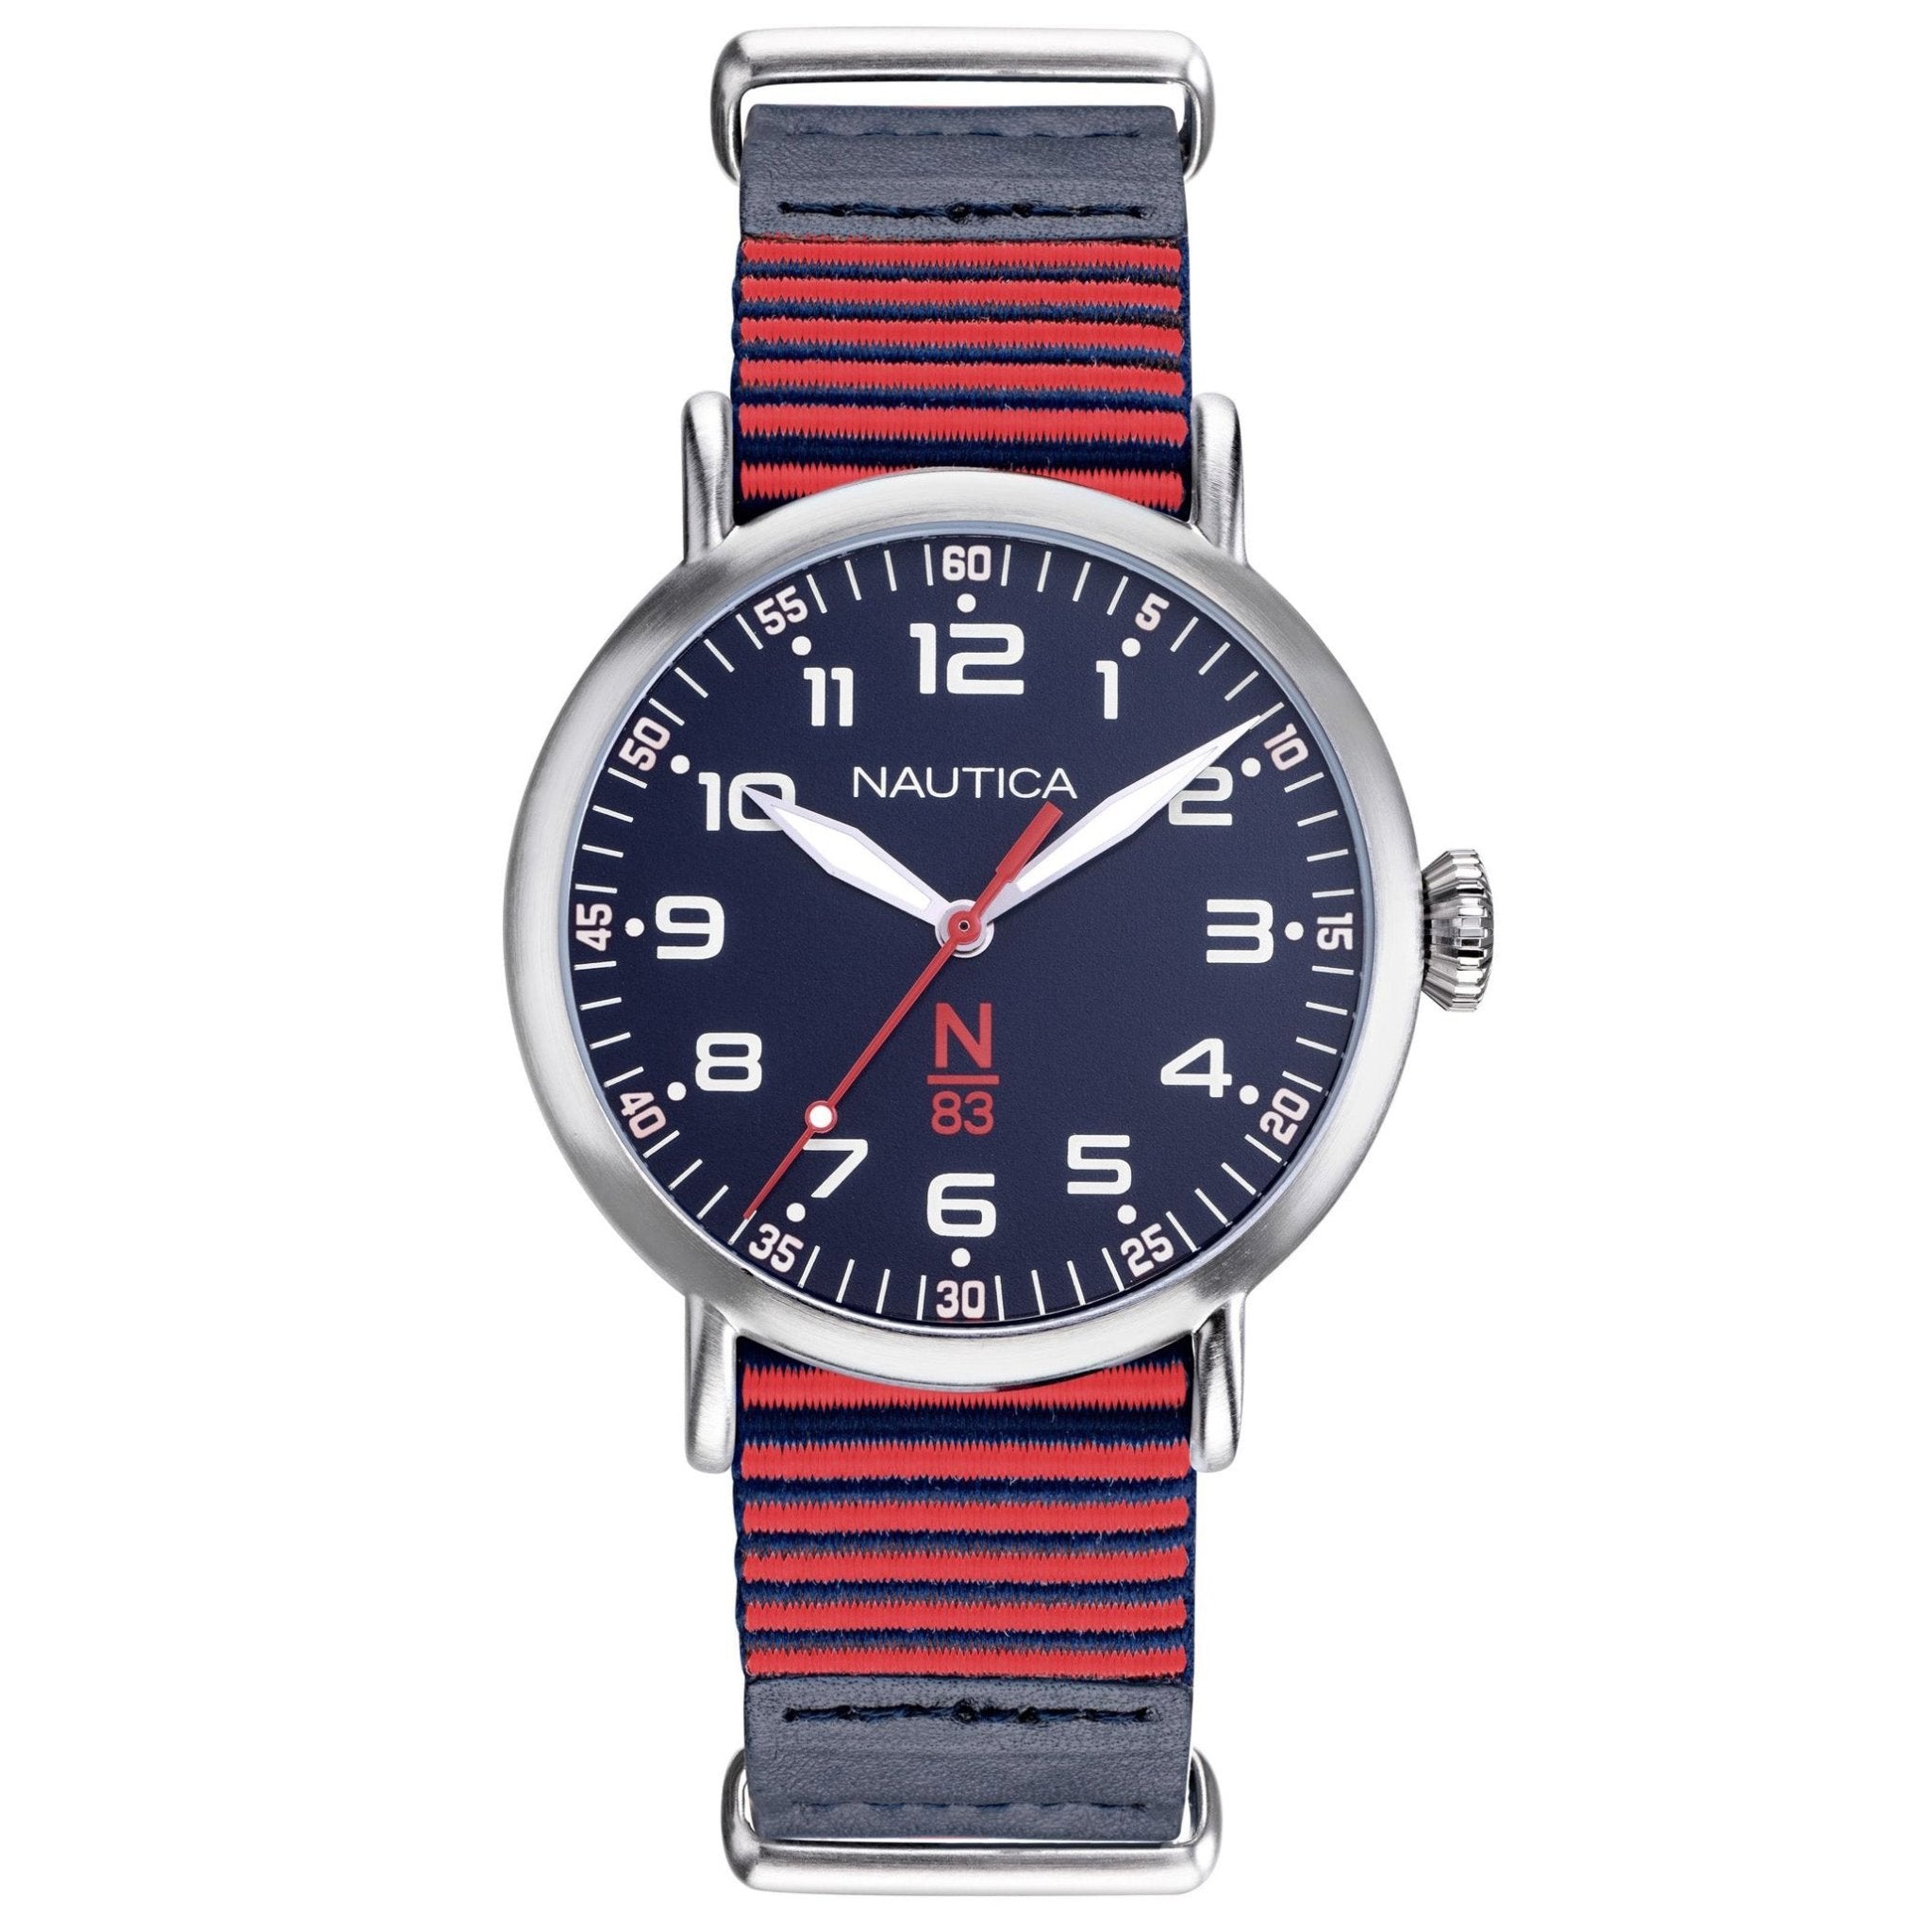 Nautica Men's Watch N-83 Wakeland NAPWLS902 - Watches & Crystals